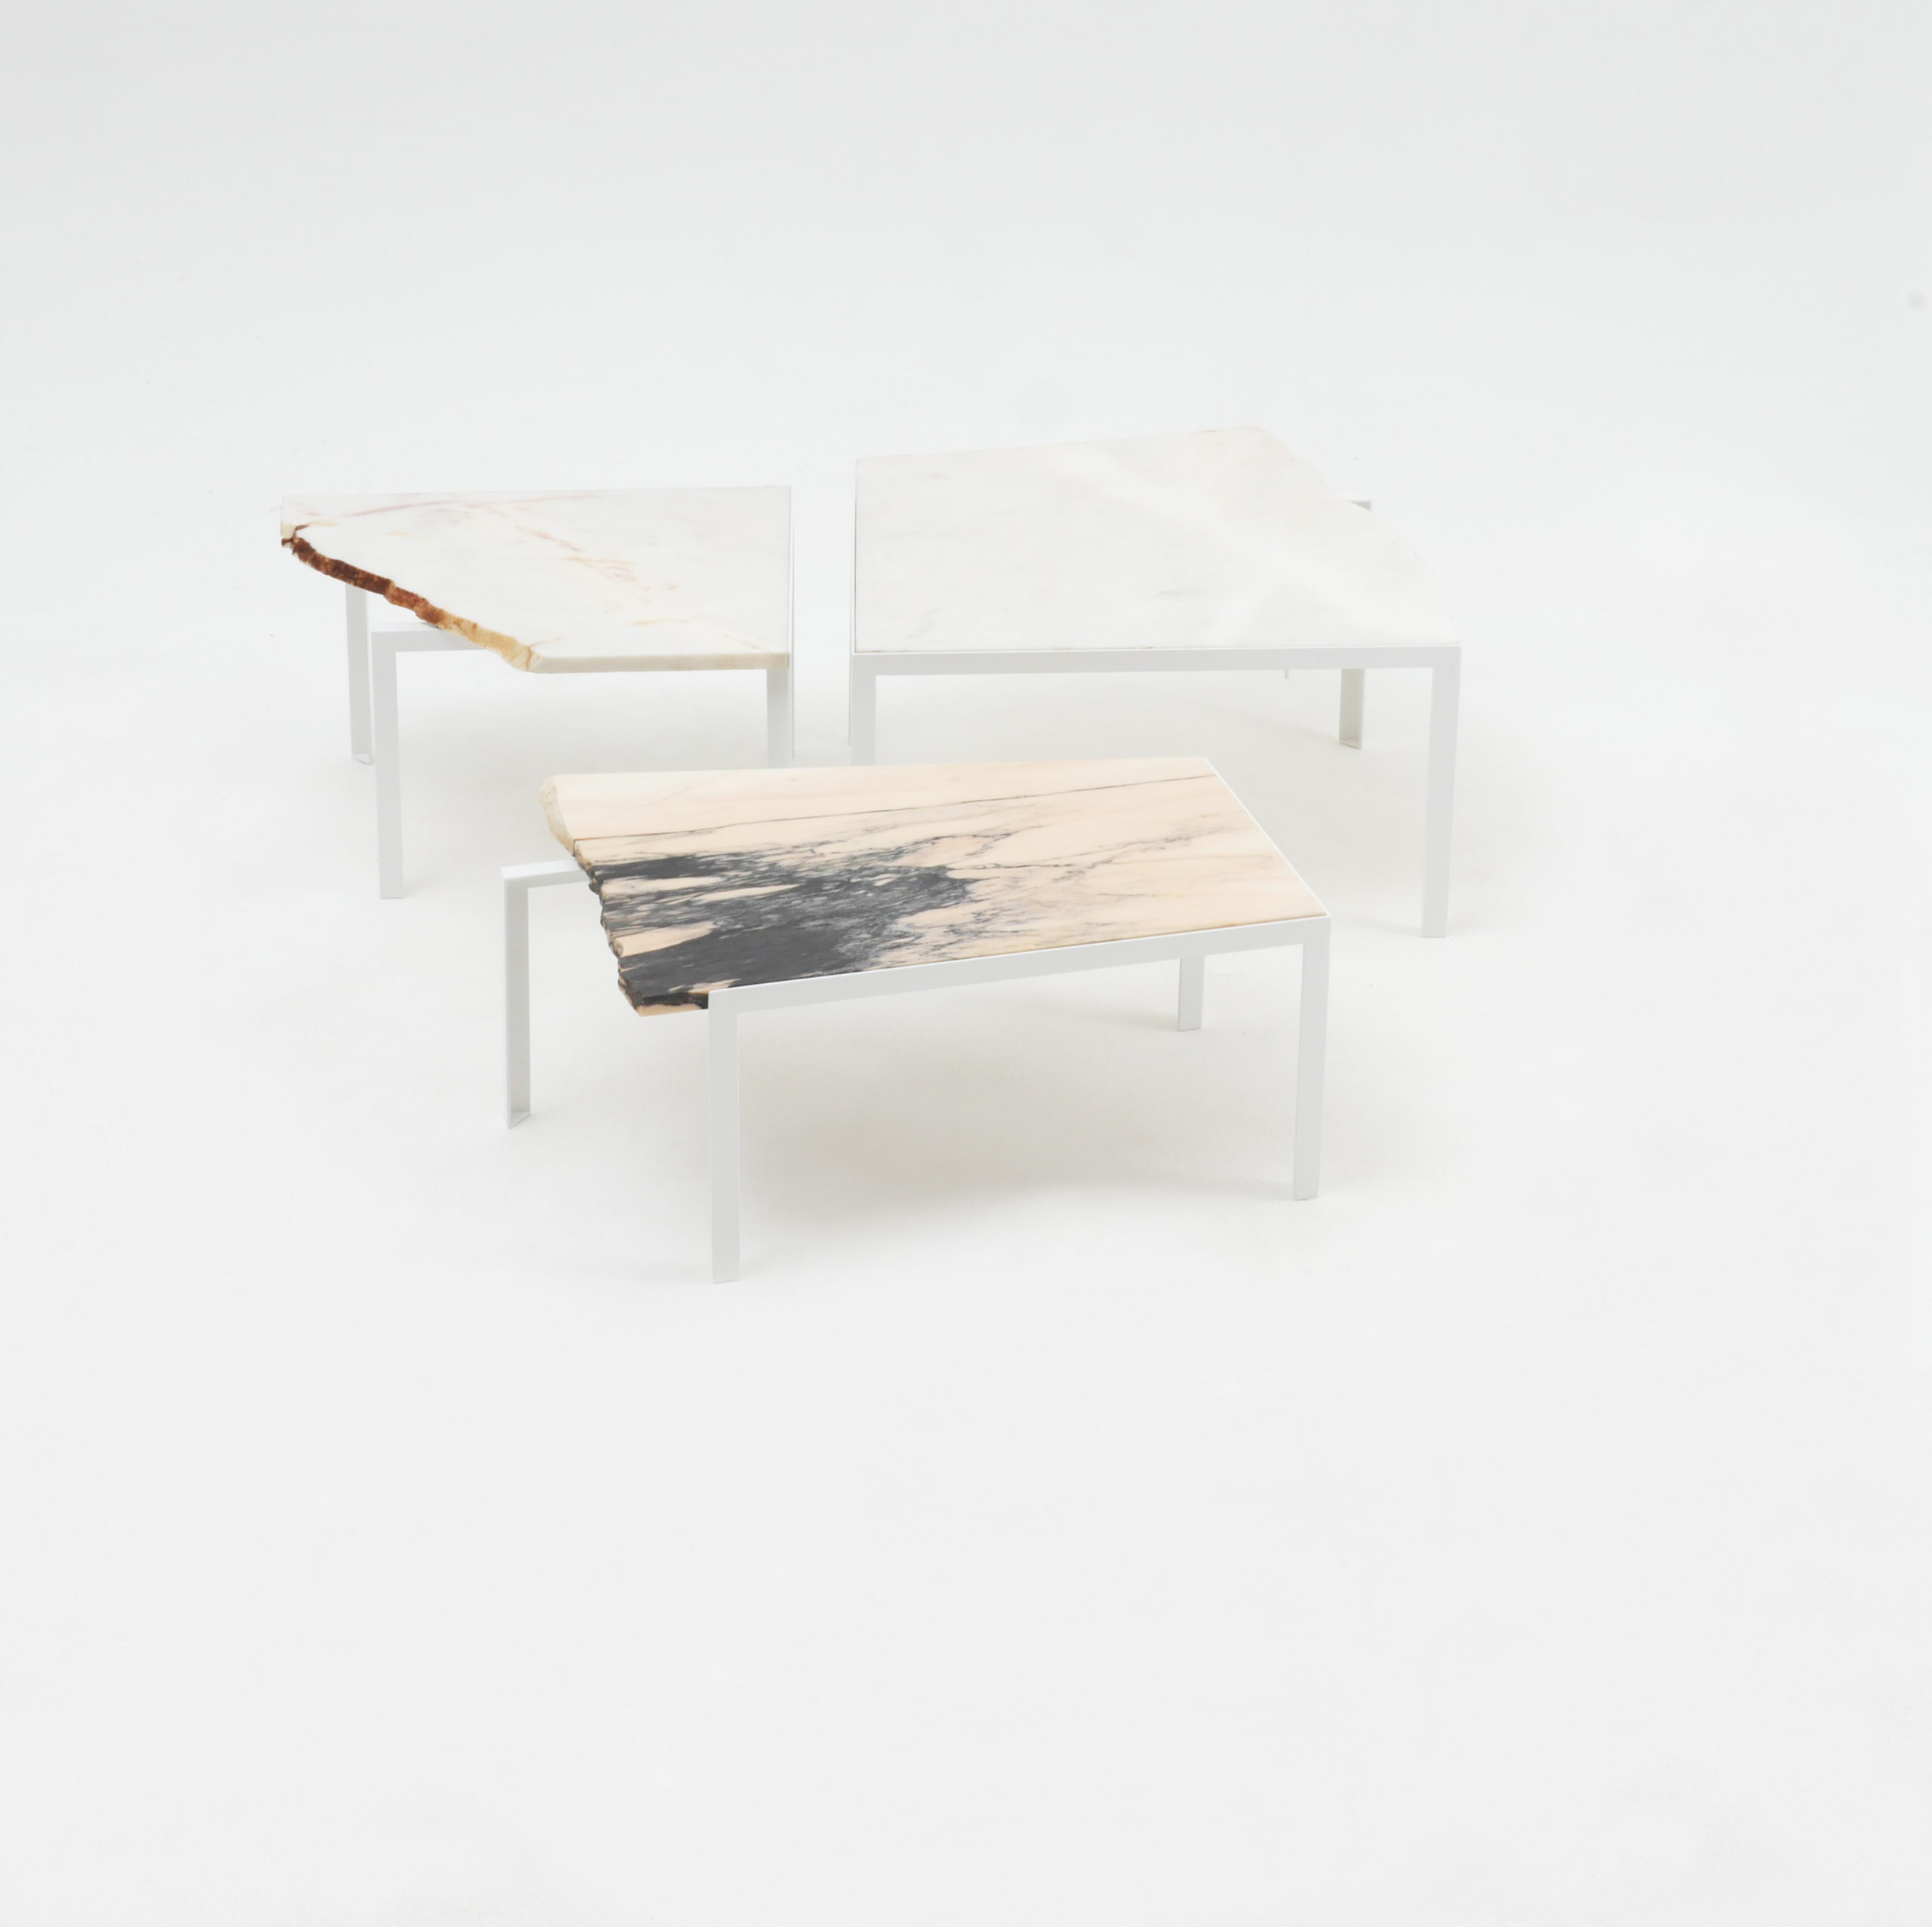 Beistelltisch von Atelier Haussmann entworfen von Hervé Humbert, Petite table d'angle ist ein kleiner Tisch aus Marmor Reststücke, es sind alle Unikate, ein produkt zwischen Kunst und Design, 100% recykelte Materialien,Manufaktur made in Germany